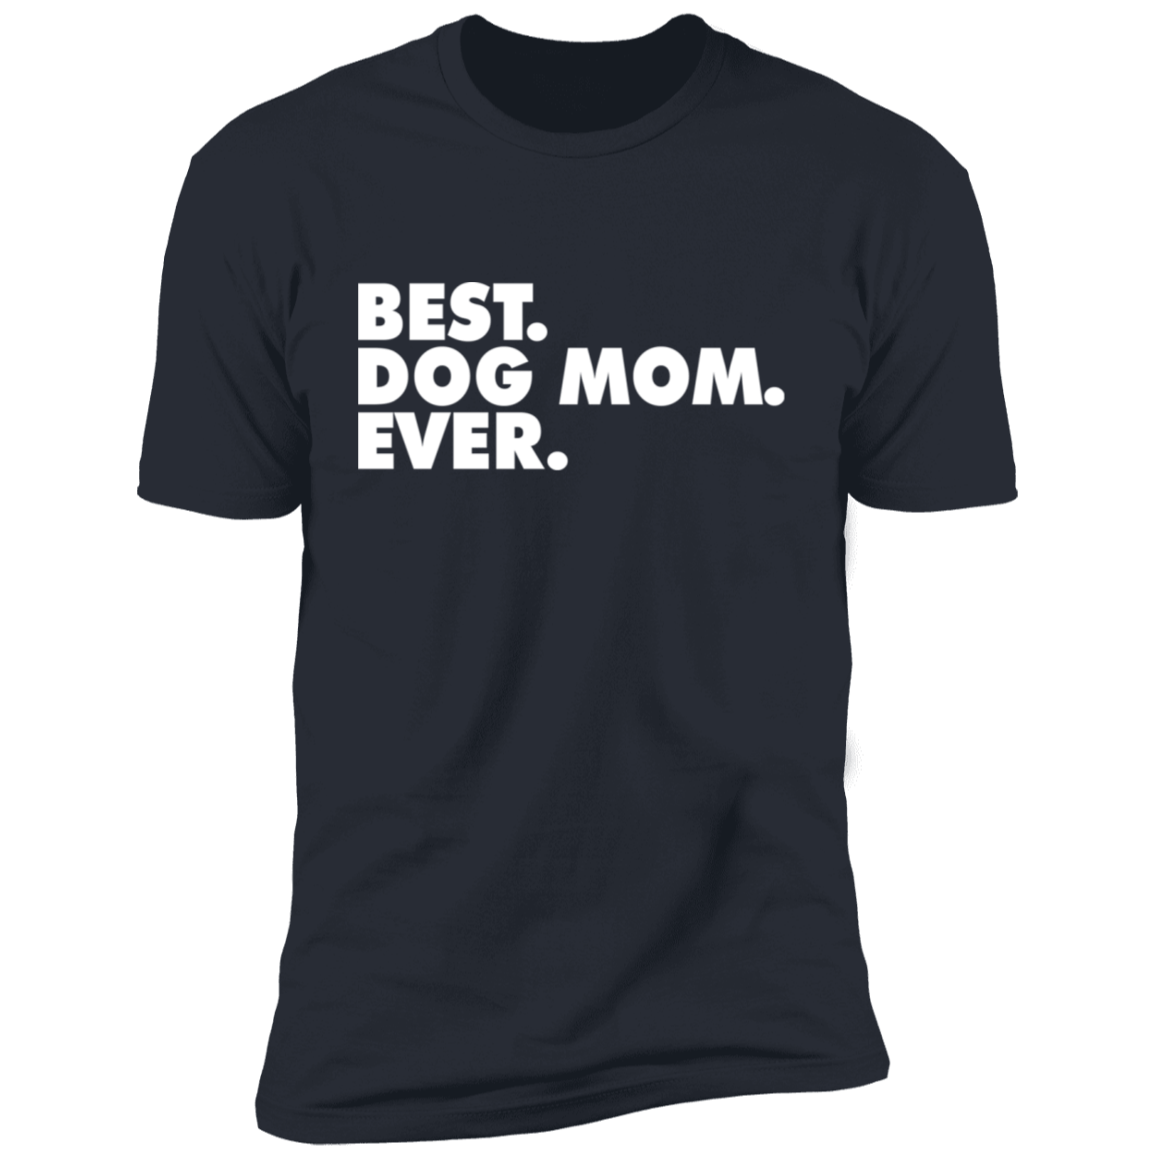 Best. Dog Mum. Ever.